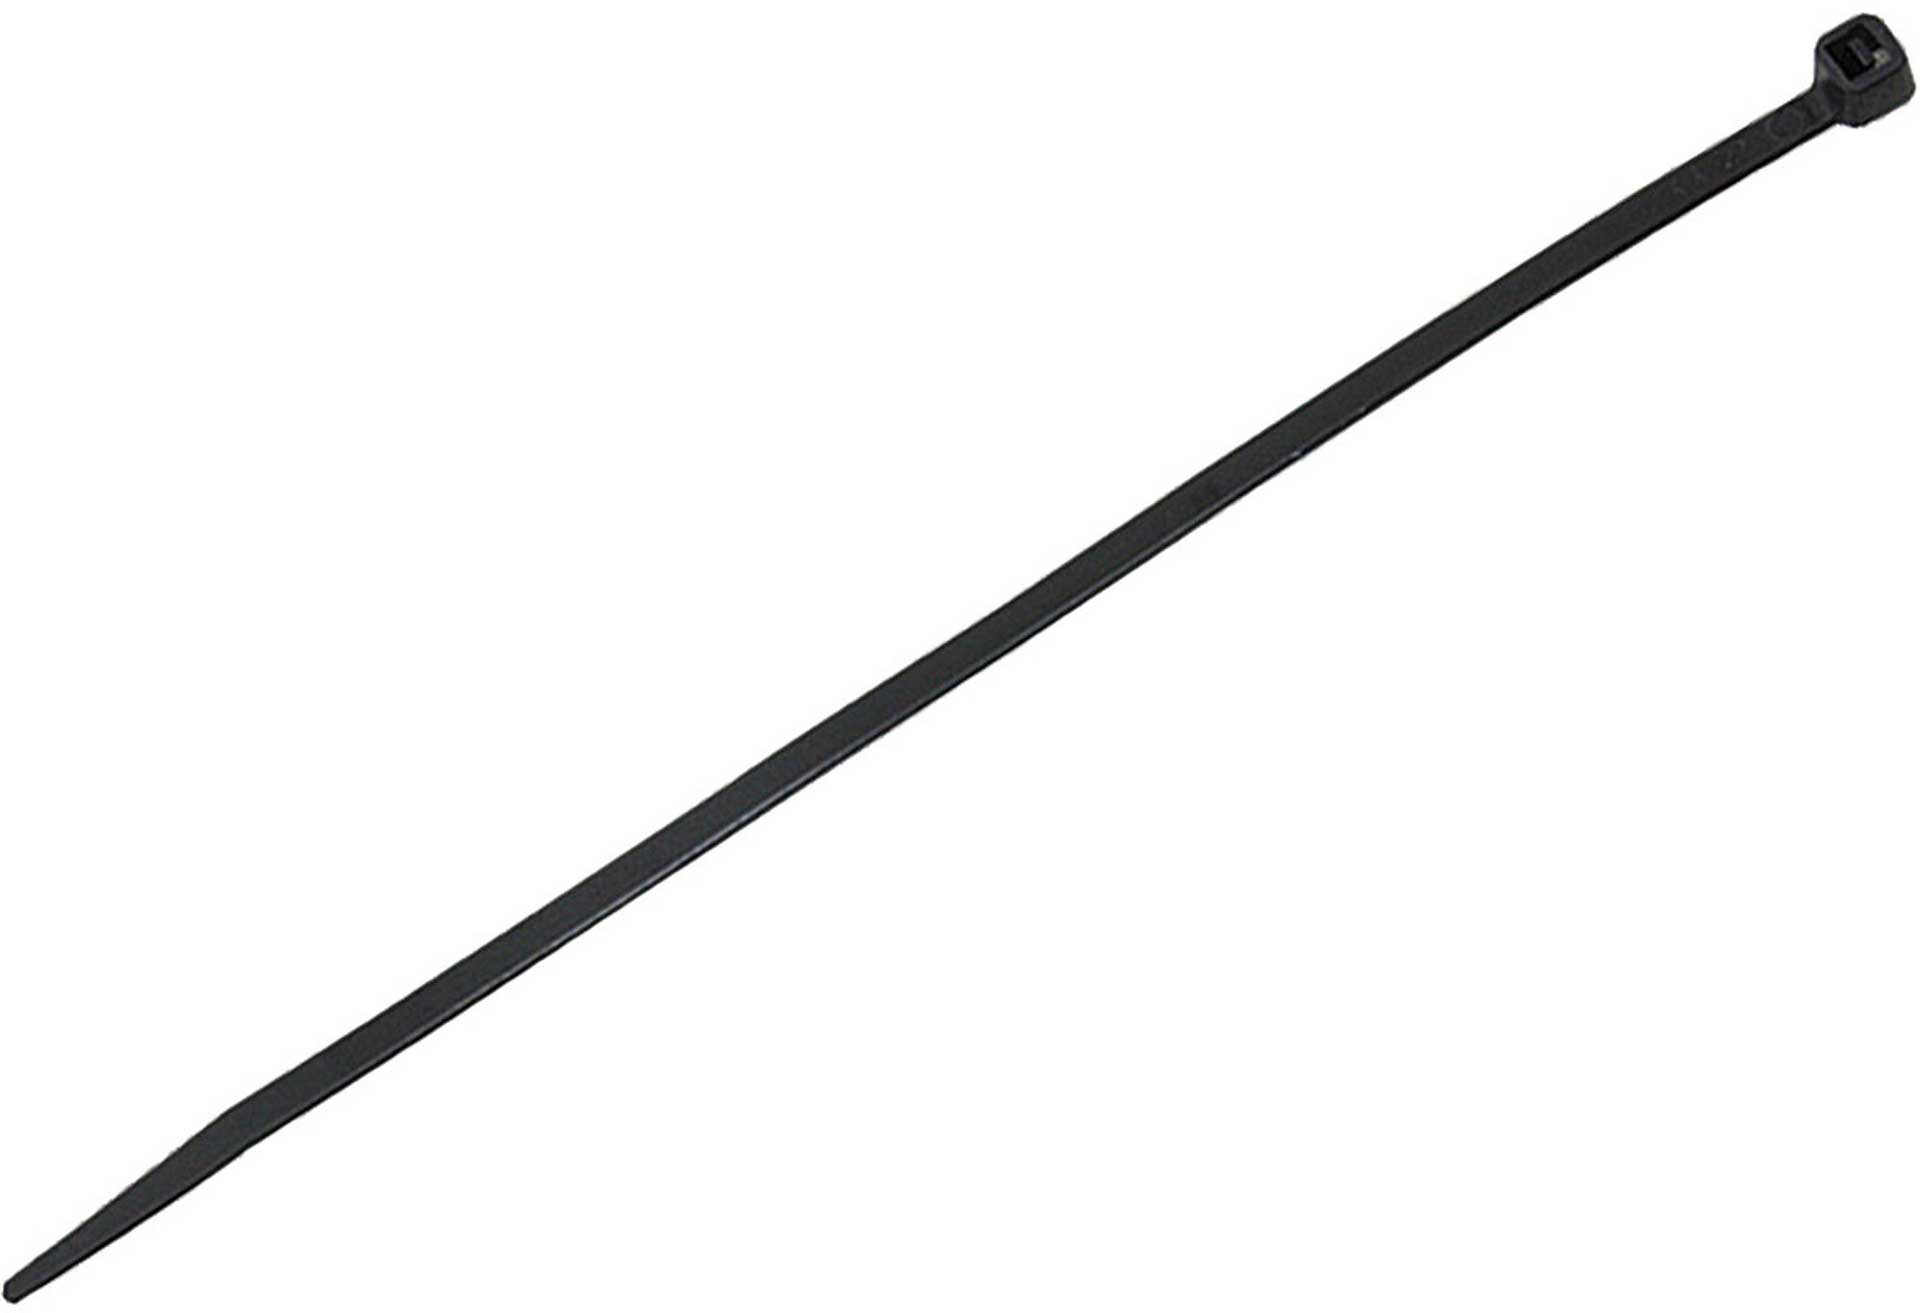 MODELLBAU LINDINGER CABLE STRAPS 140/3,6MM 100PCS. BLACK